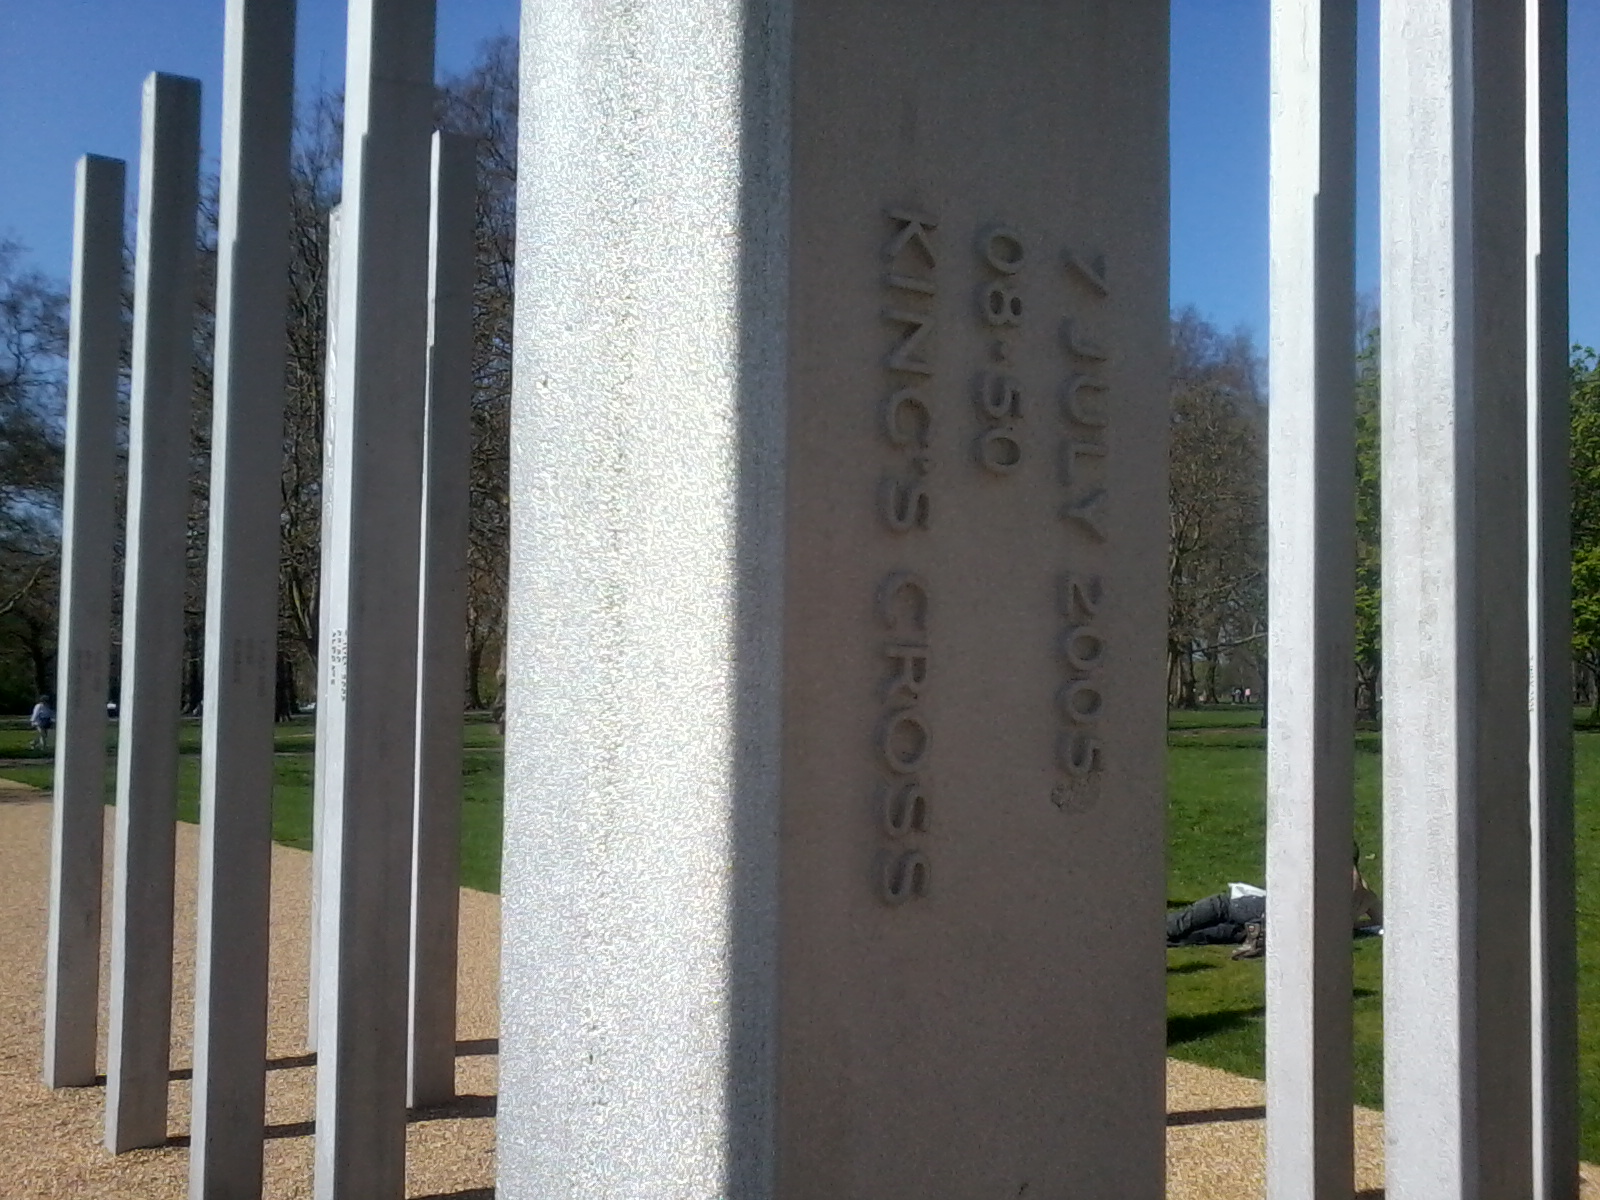 London Bombings Memorial